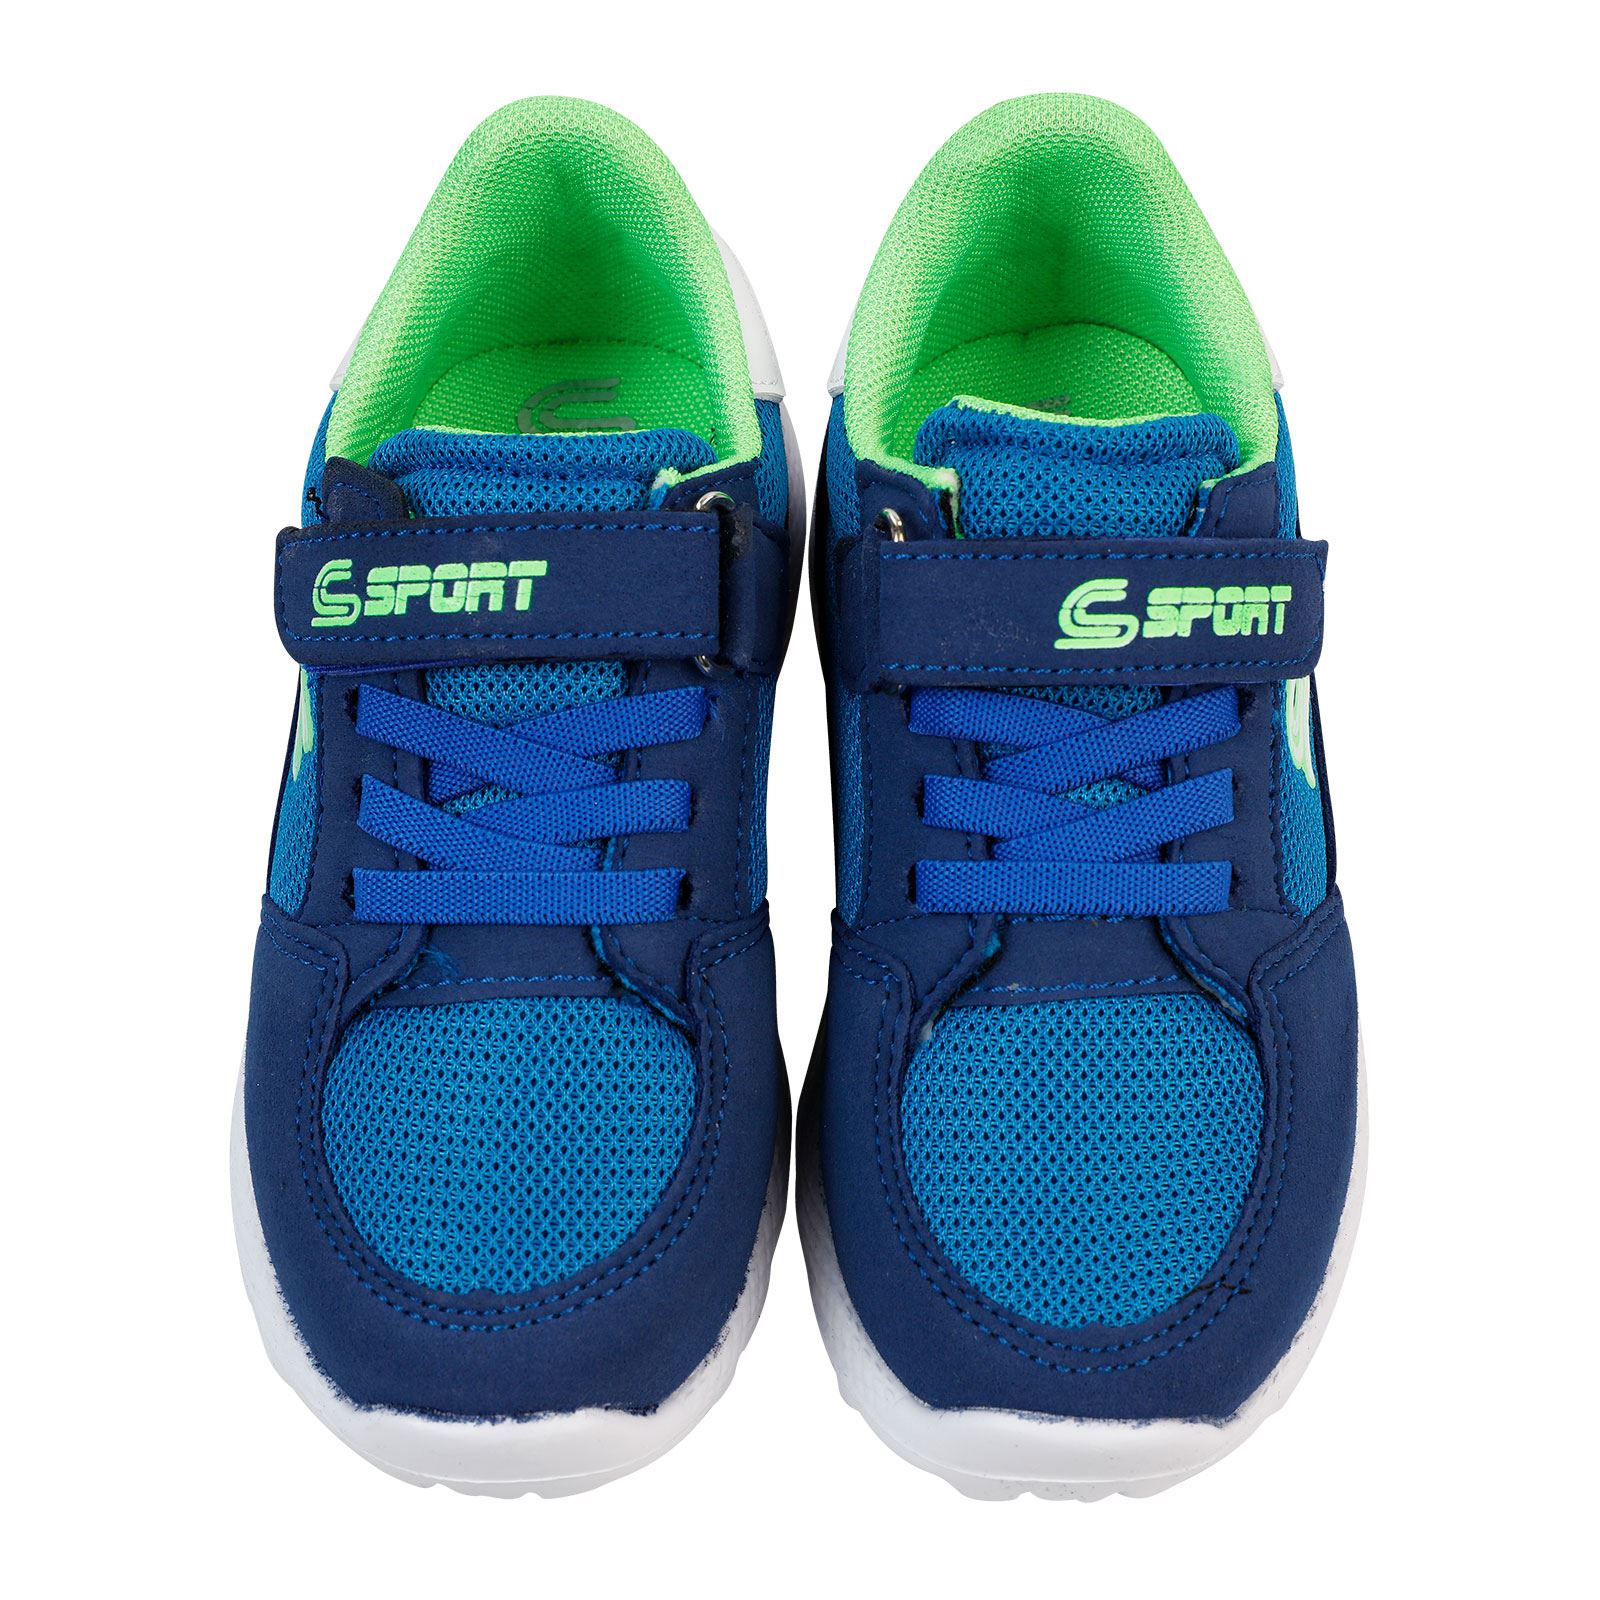 Sport Erkek Çocuk Spor Ayakkabı 26-30 Numara Saks Mavisi